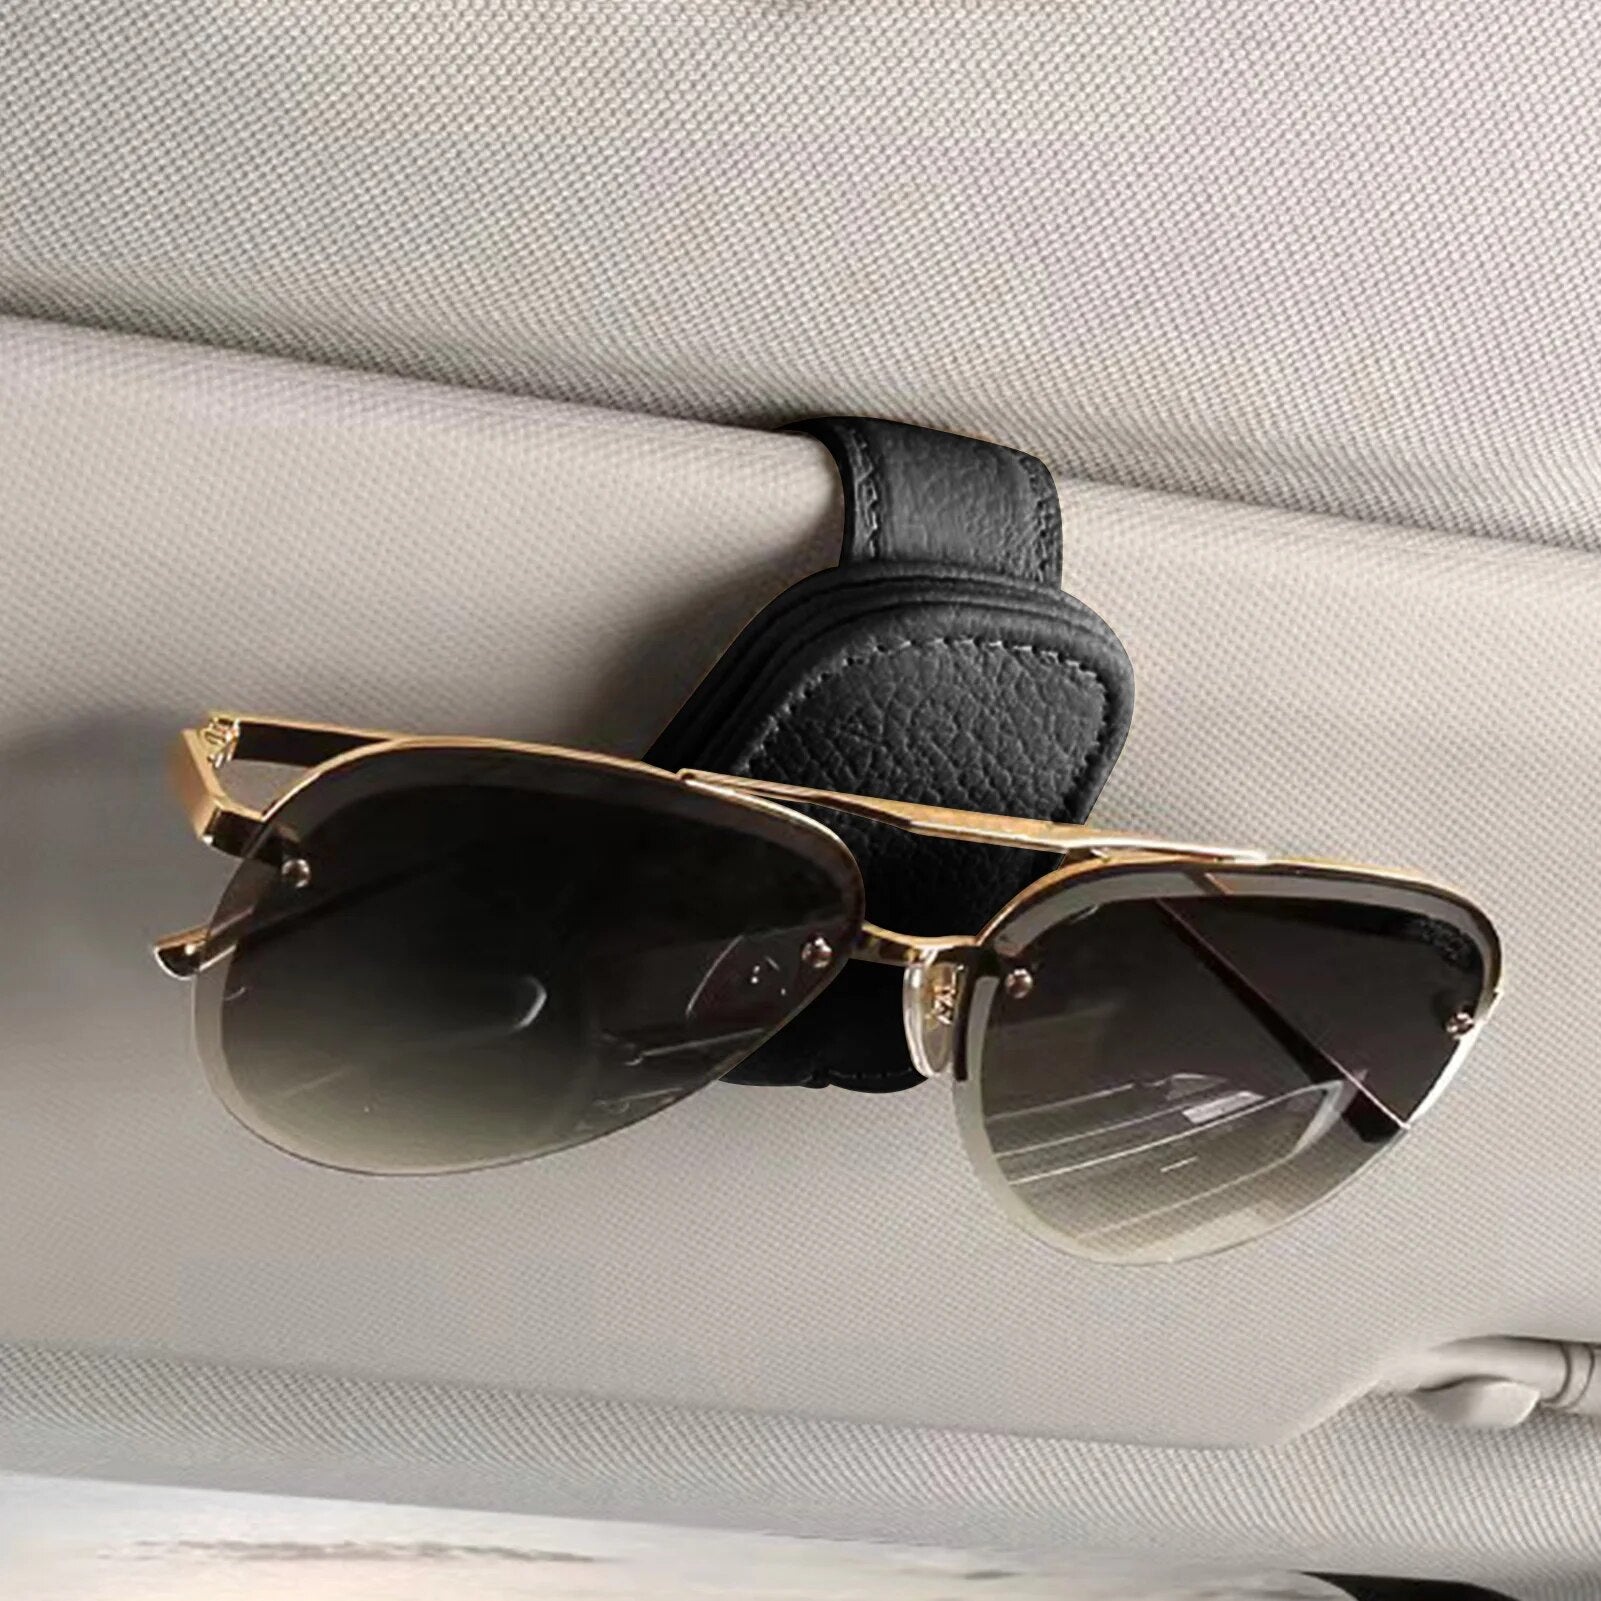 Crochet de rangement de lunettes pour voiture | LunetteLock™ - AUTO FASHION ACCESSOIRES